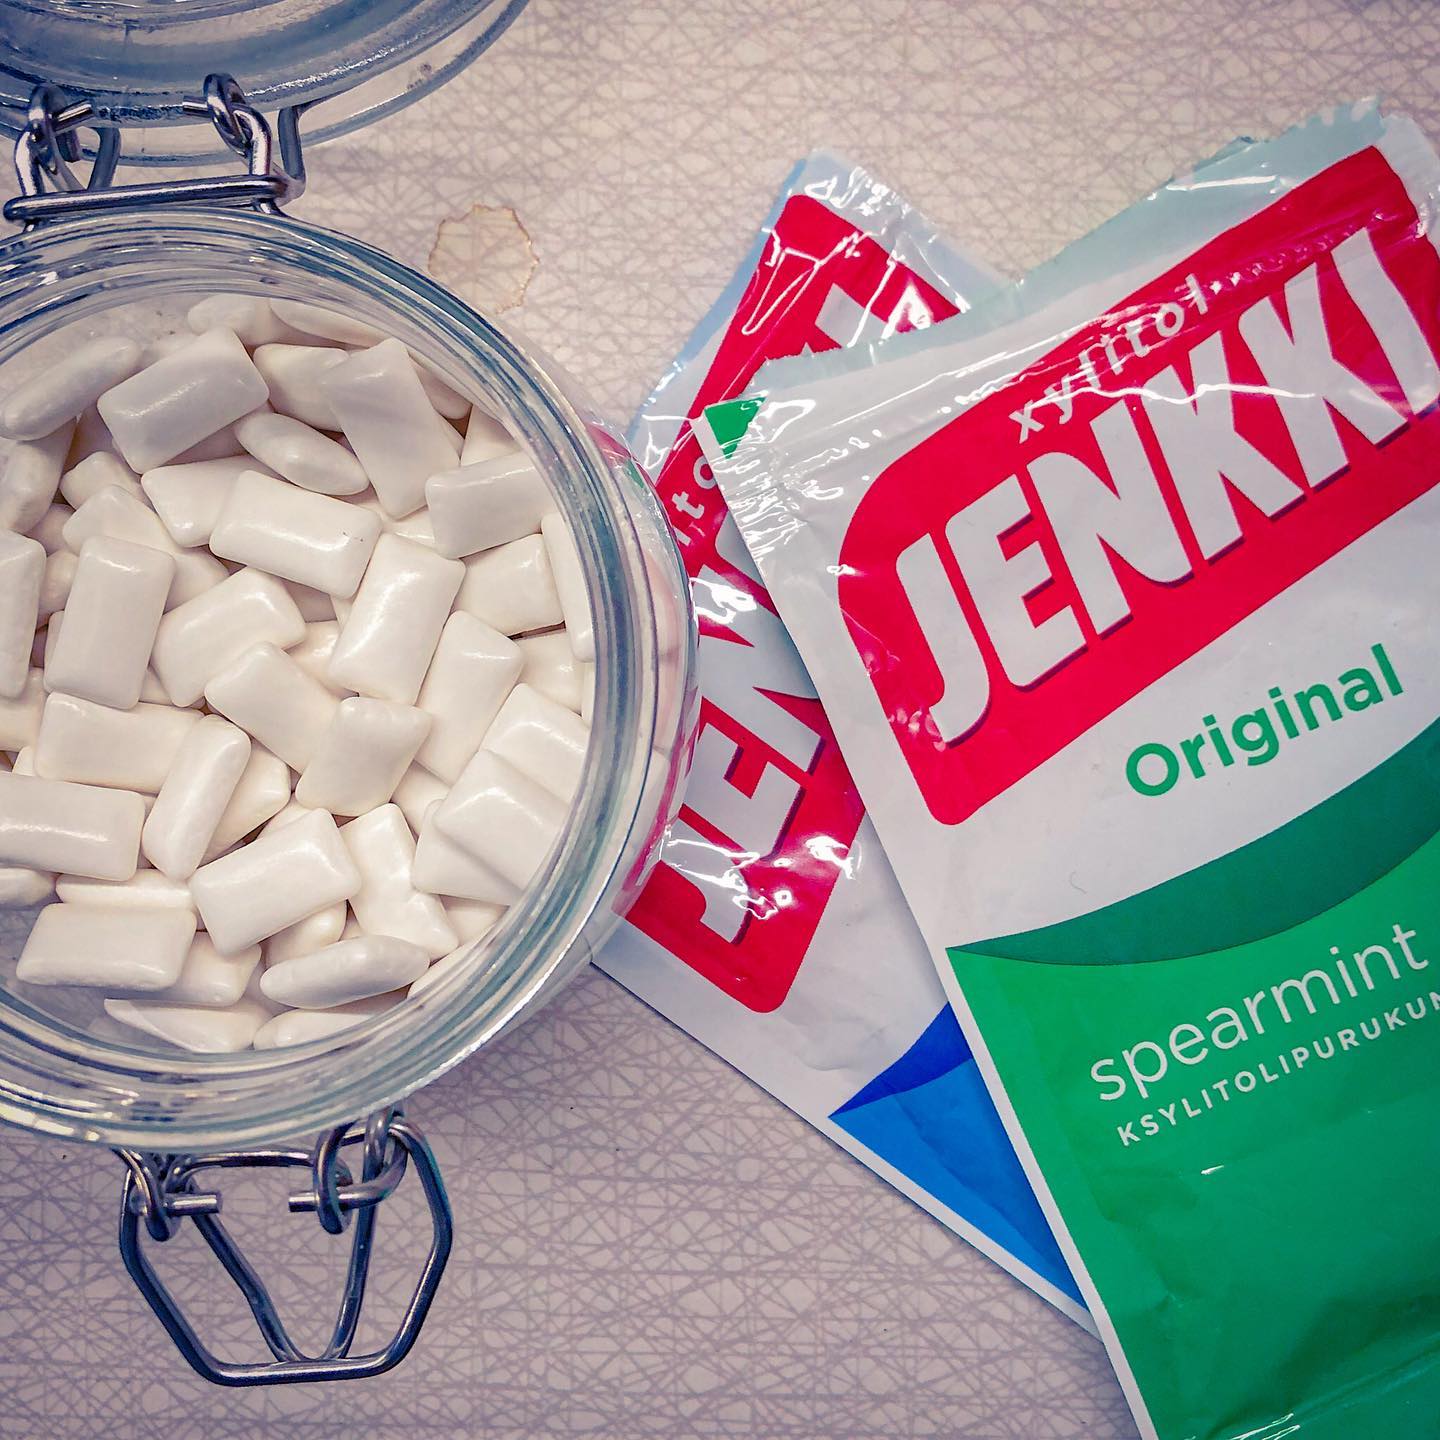 Försöker tillverka Jenkki Mix. Men det blir inte lika bra som den riktiga påsen. #jenkkijunkiesofyoungeurope #jenkki